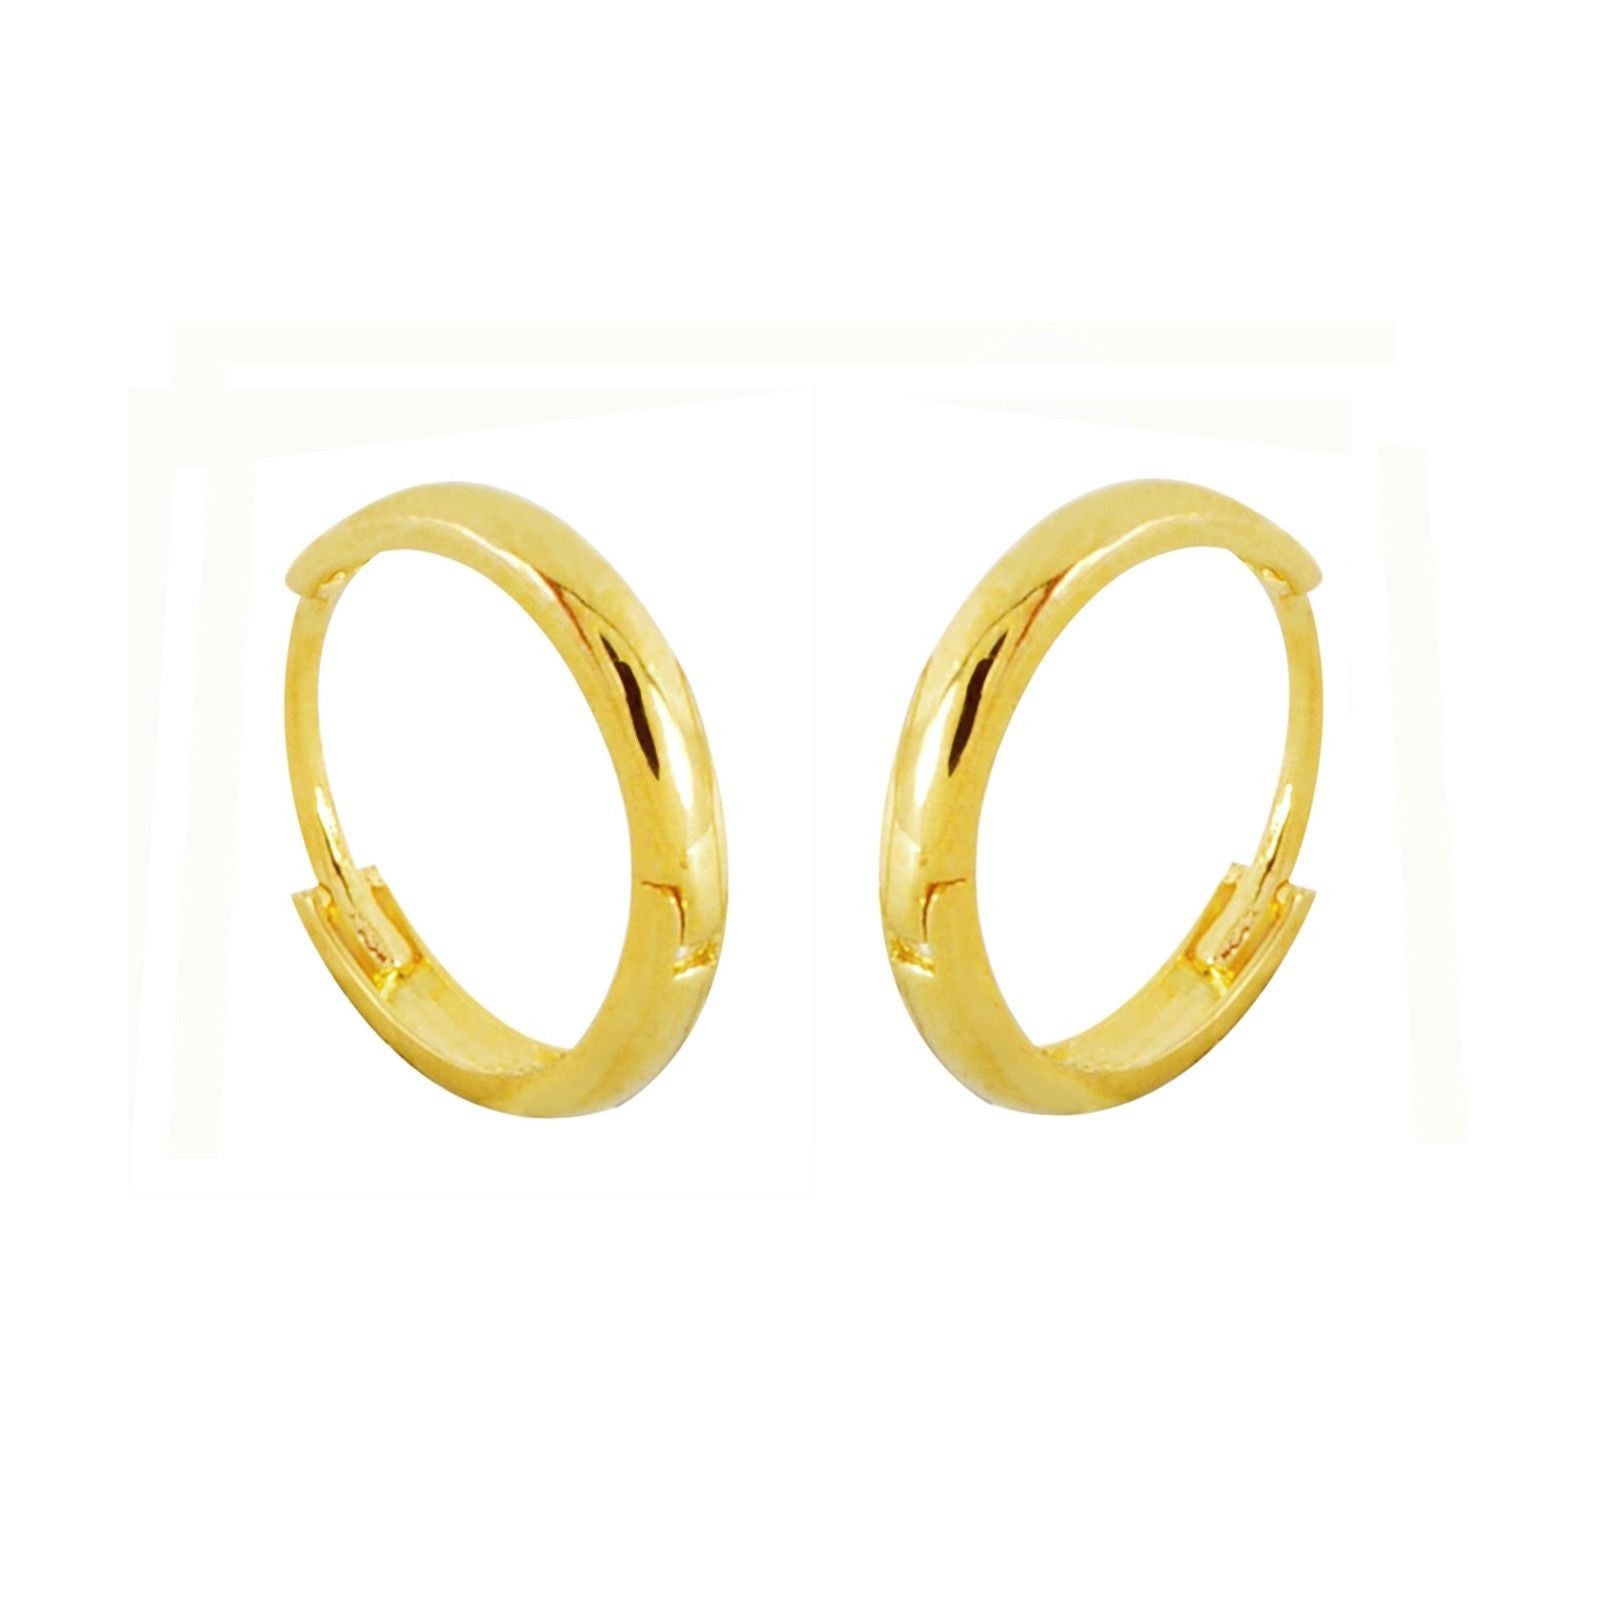 10k Yellow Gold Hoop Earrings 13mm Medium Hinged Hoops | Jewelryland.com